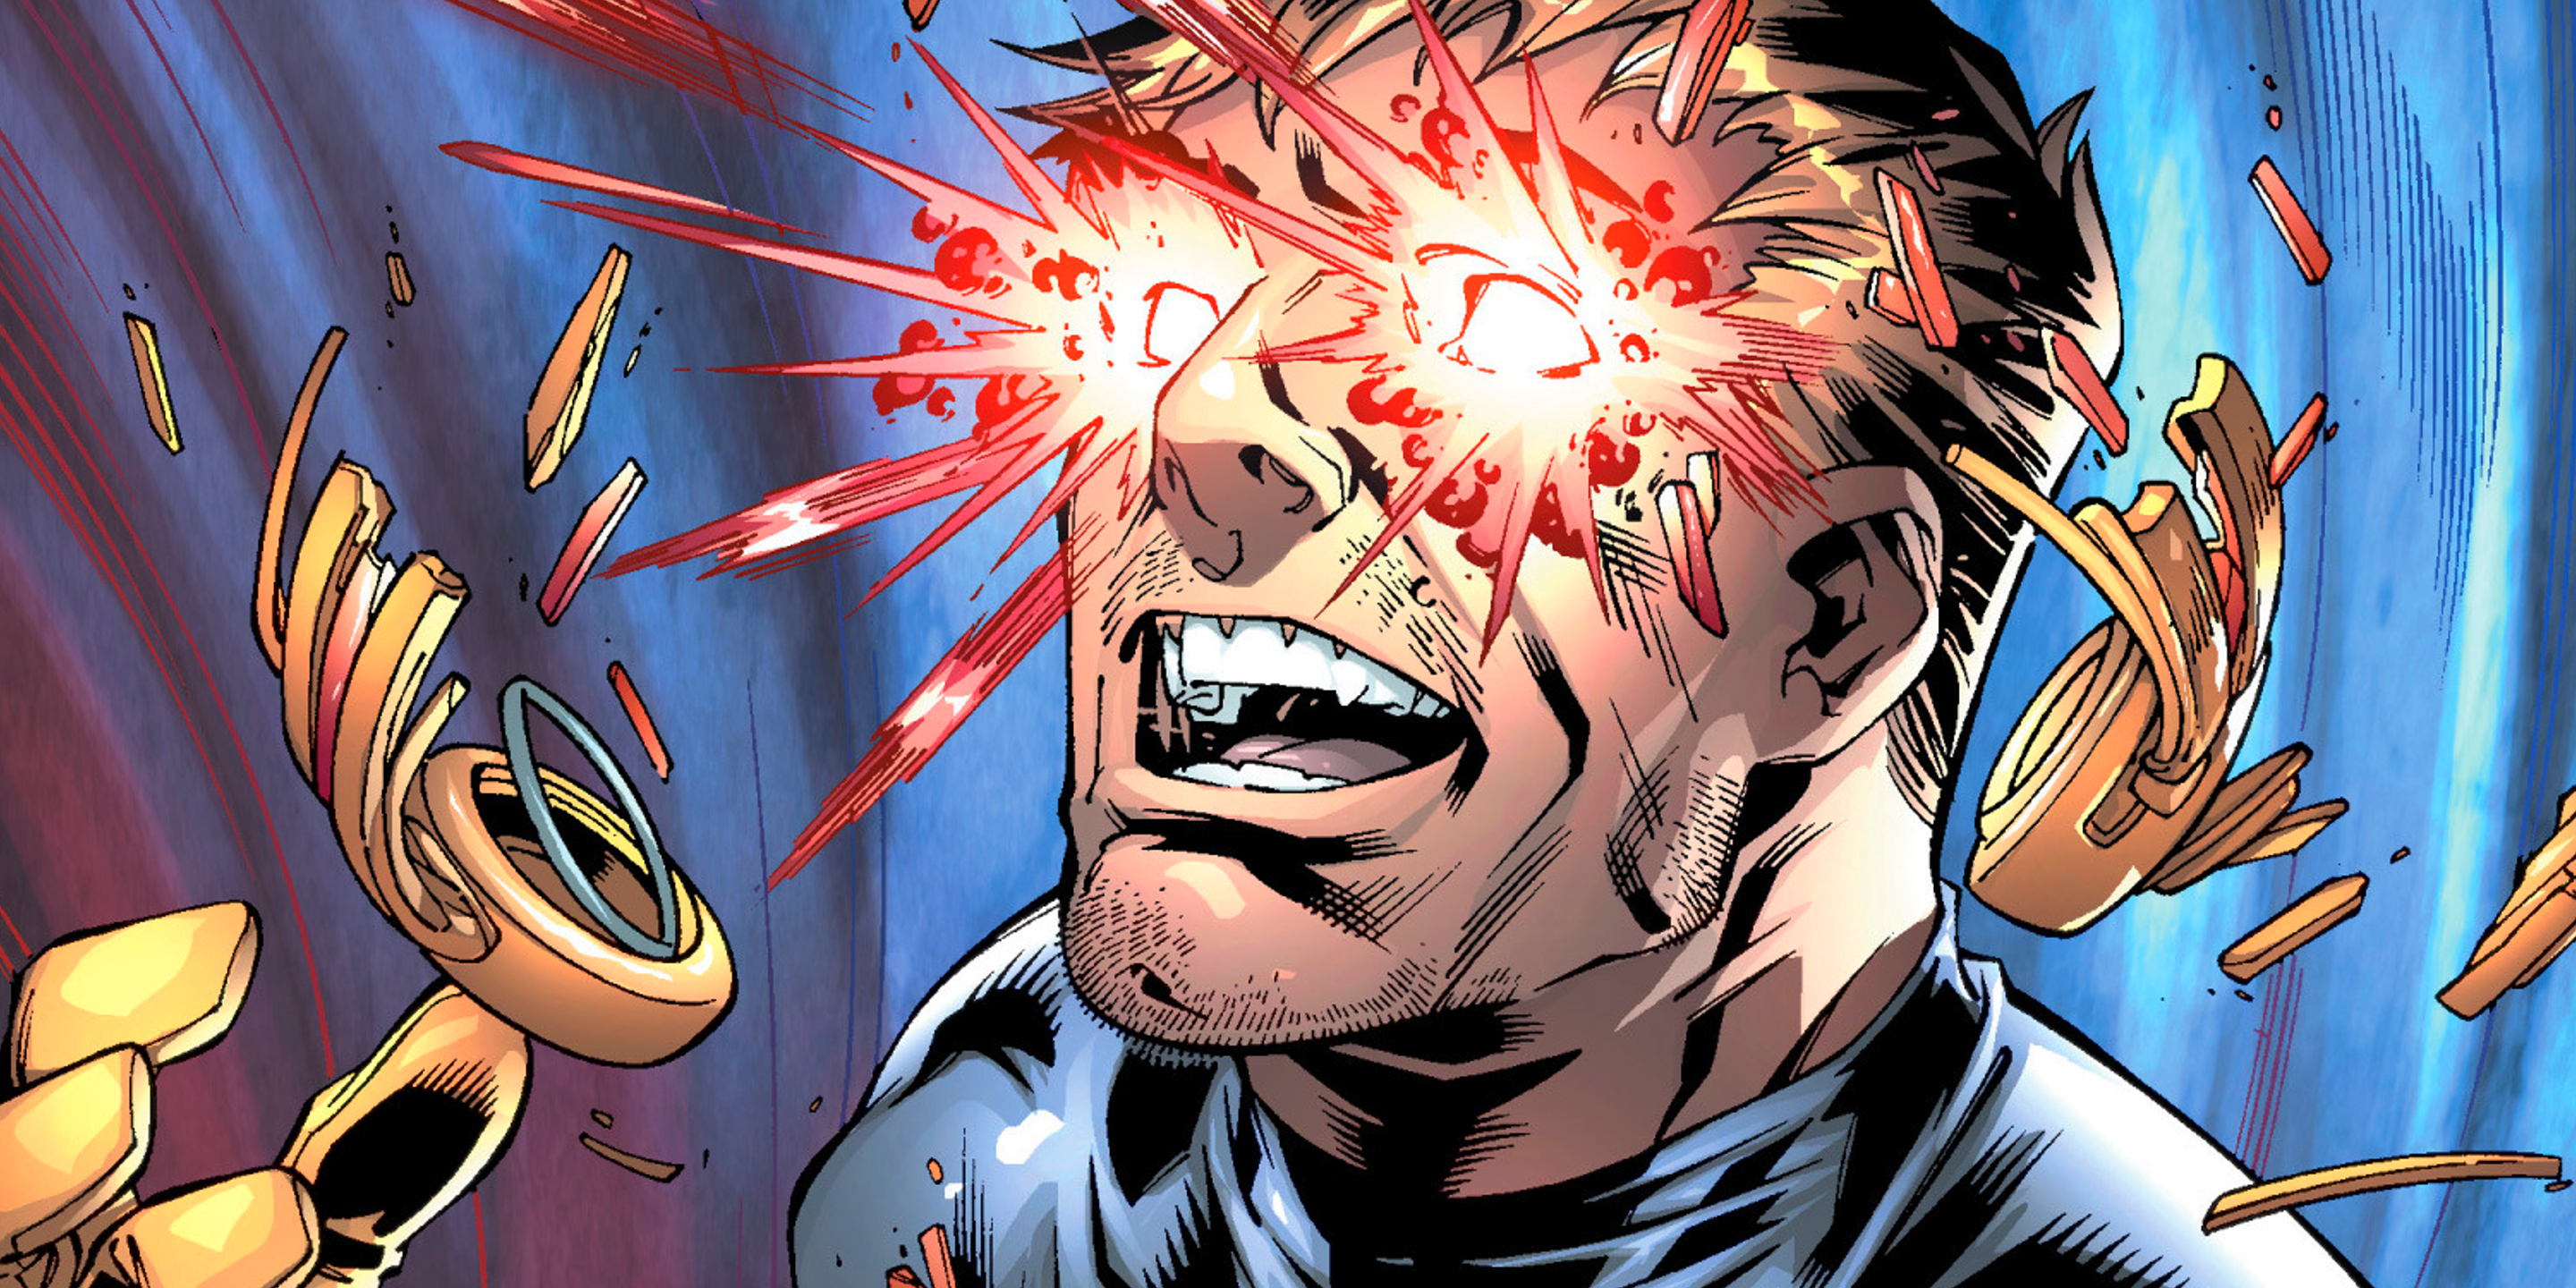 La forma definitiva de Cyclops mostró que sus poderes mutantes podrían convertirlo en un dios